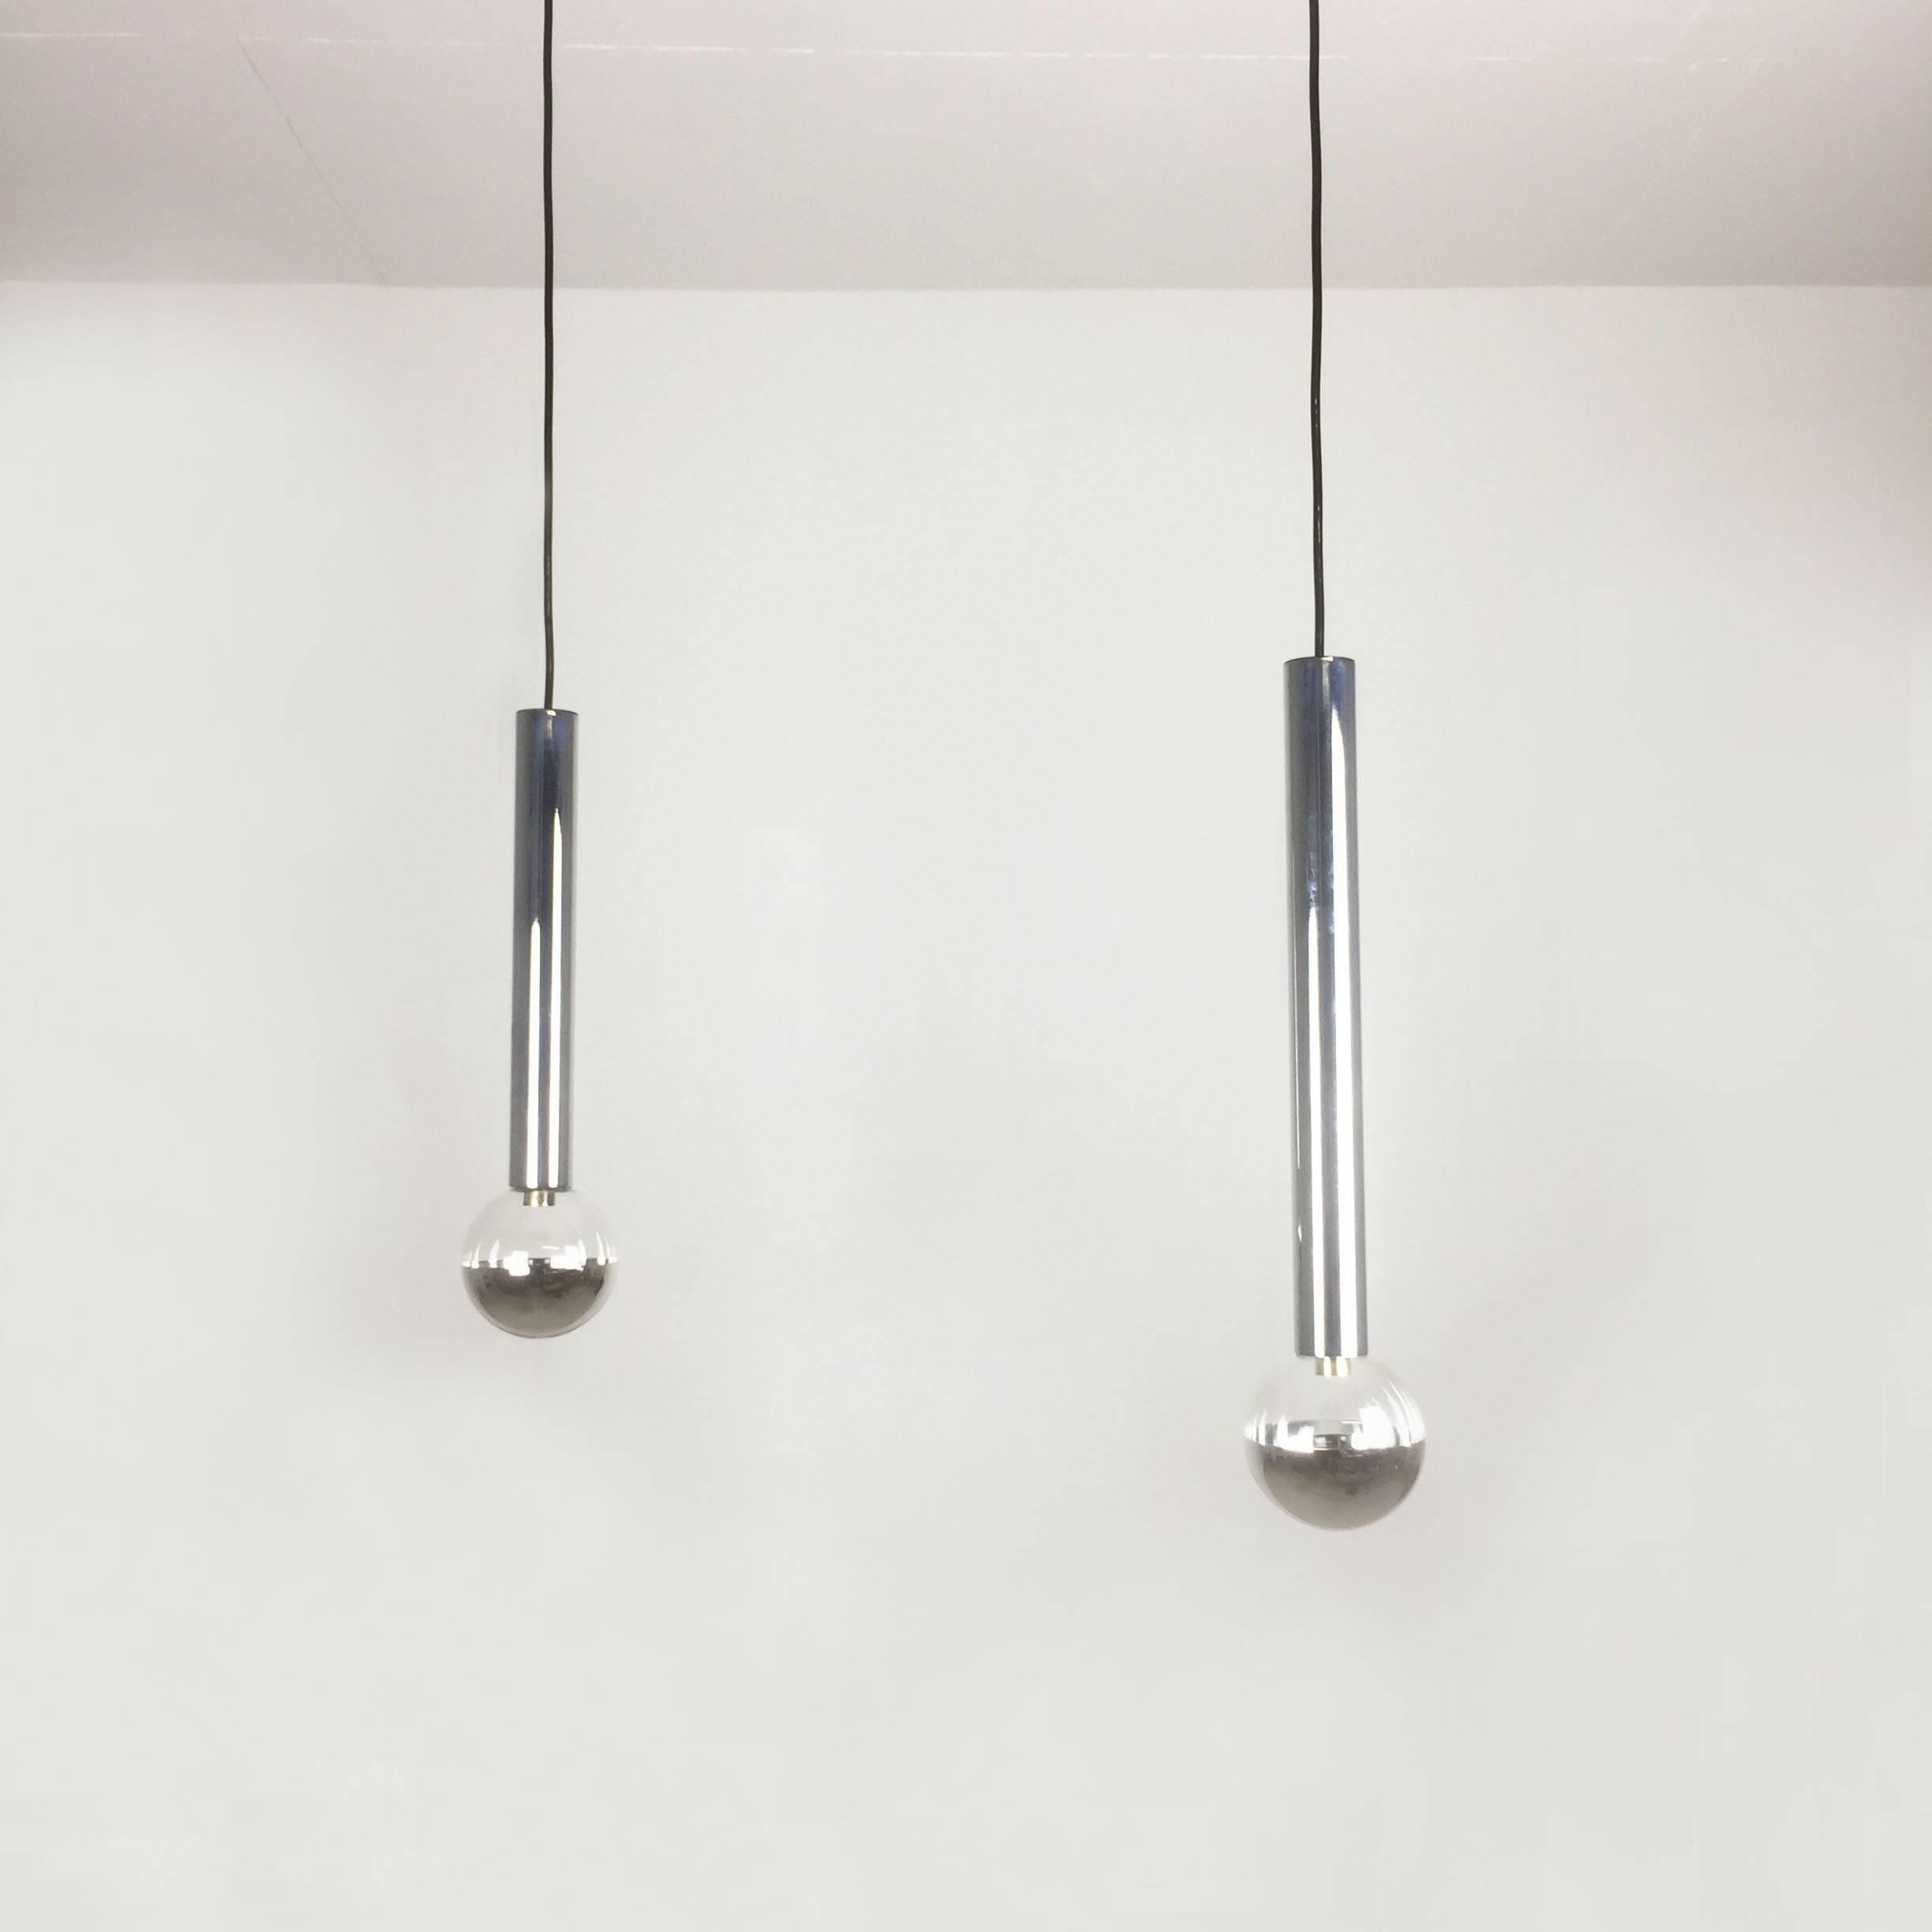 Article :

ensemble de deux lampes à suspension en tube



Producteur : 

Staff Lights, Allemagne

Conception :

Motoko Ishii

Origine : 

Allemagne


Âge : 

1970s



Description : 

Cette suspension a été conçue par